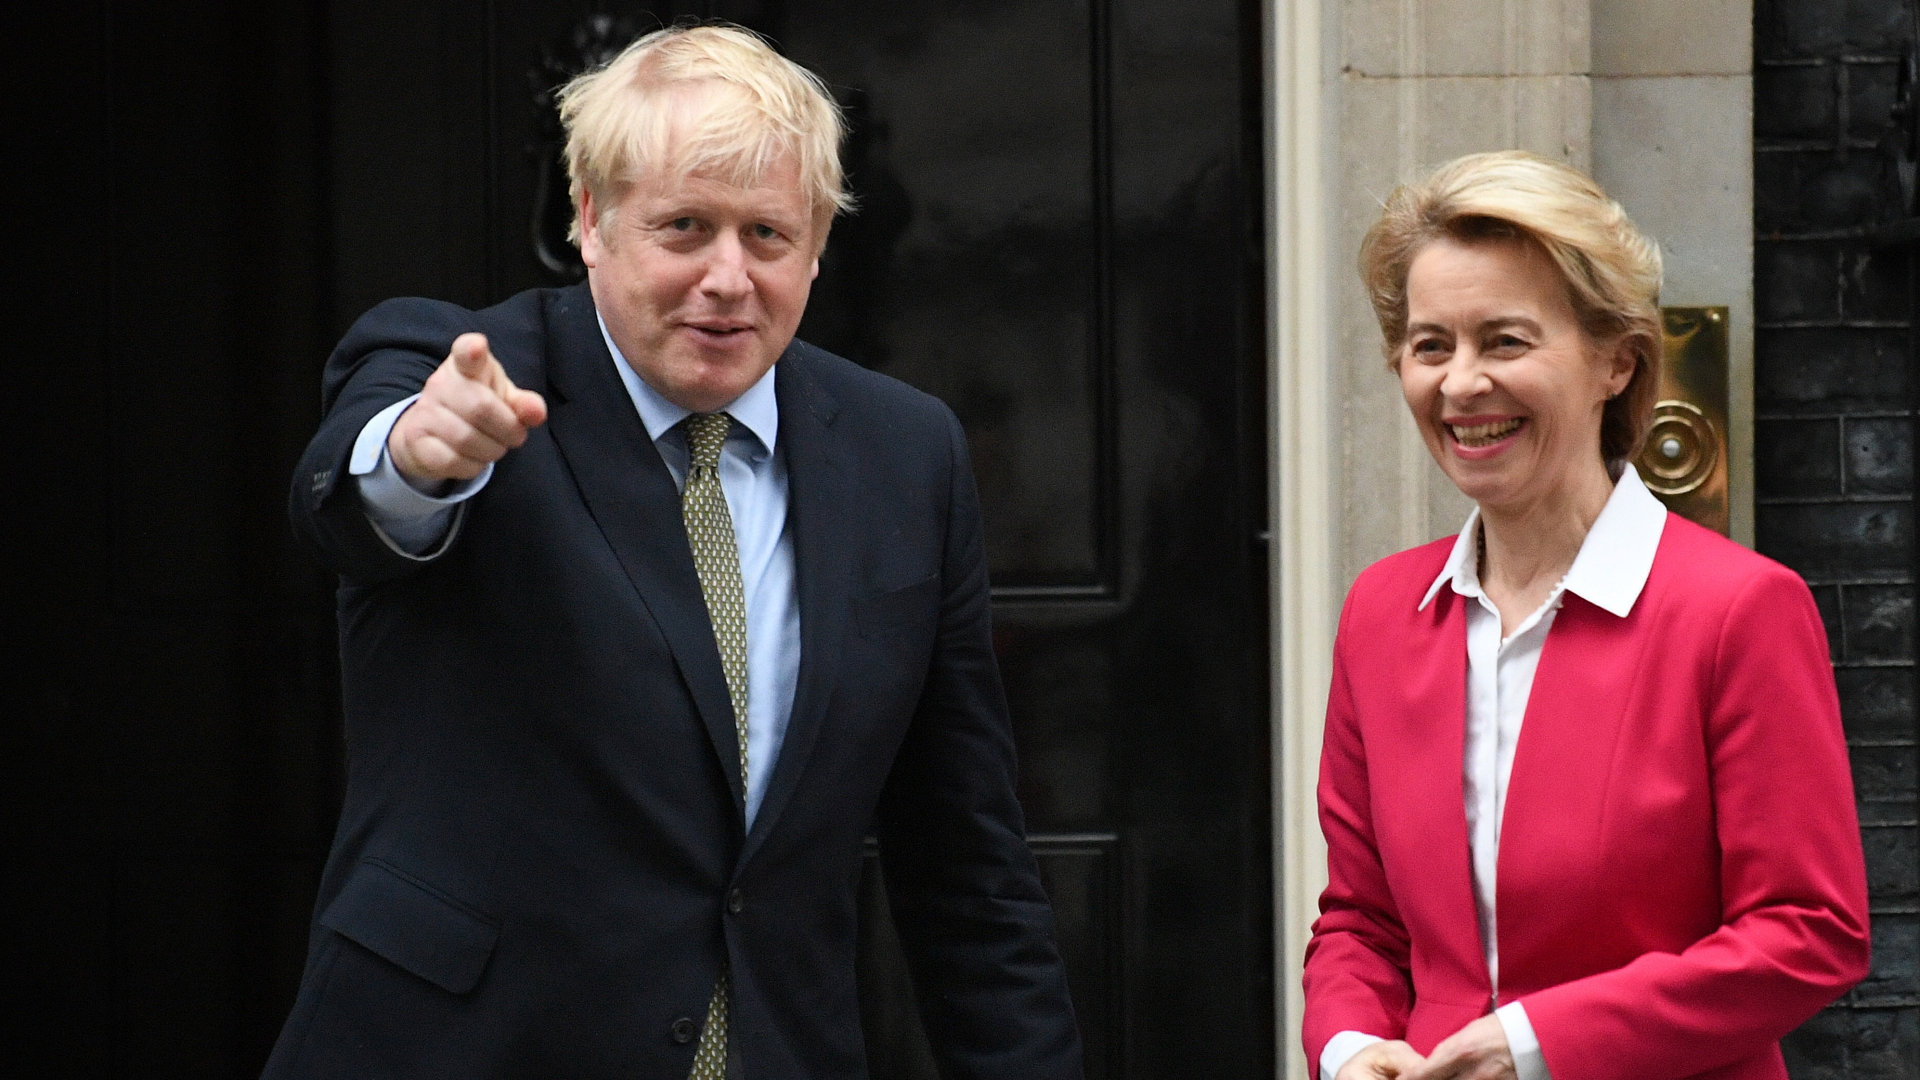 Großbritanniens Premierminister Boris Johnson und Ursula von der Leyen, die Präsidentin der Europäischen Kommission, treffen sich vor der Downing Street 10 (Archivbild).